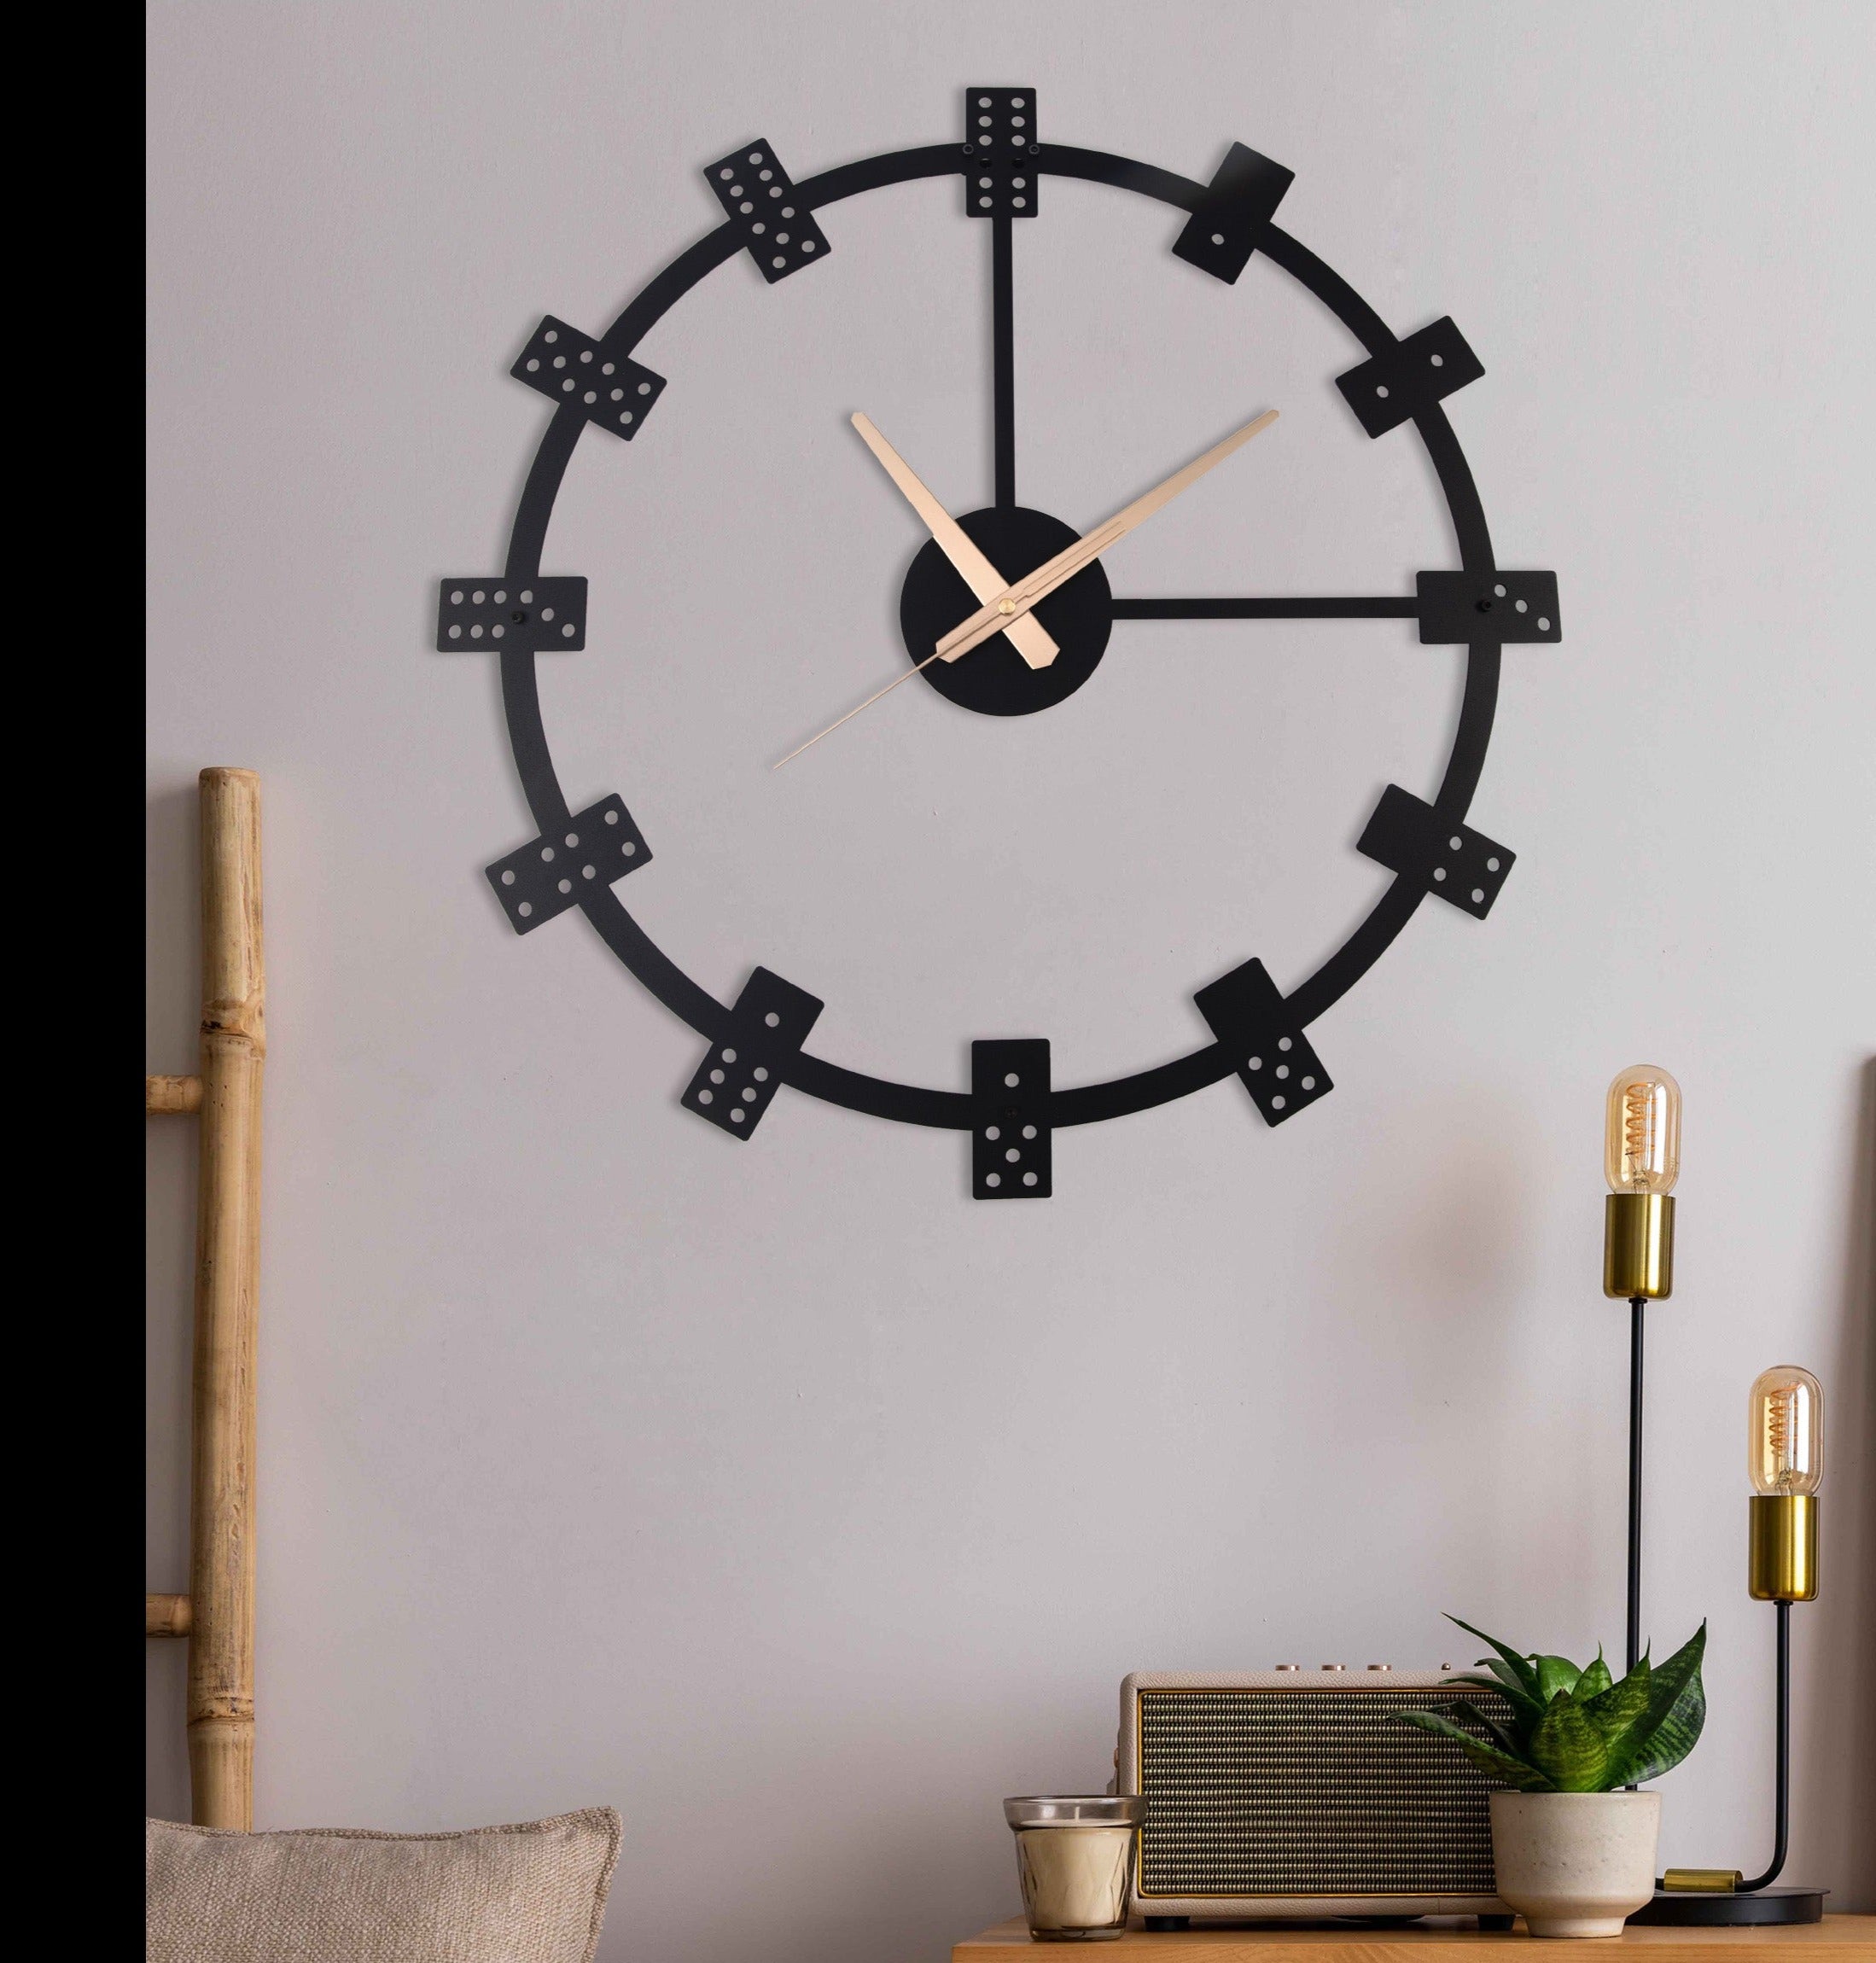 Dice Wall Clock